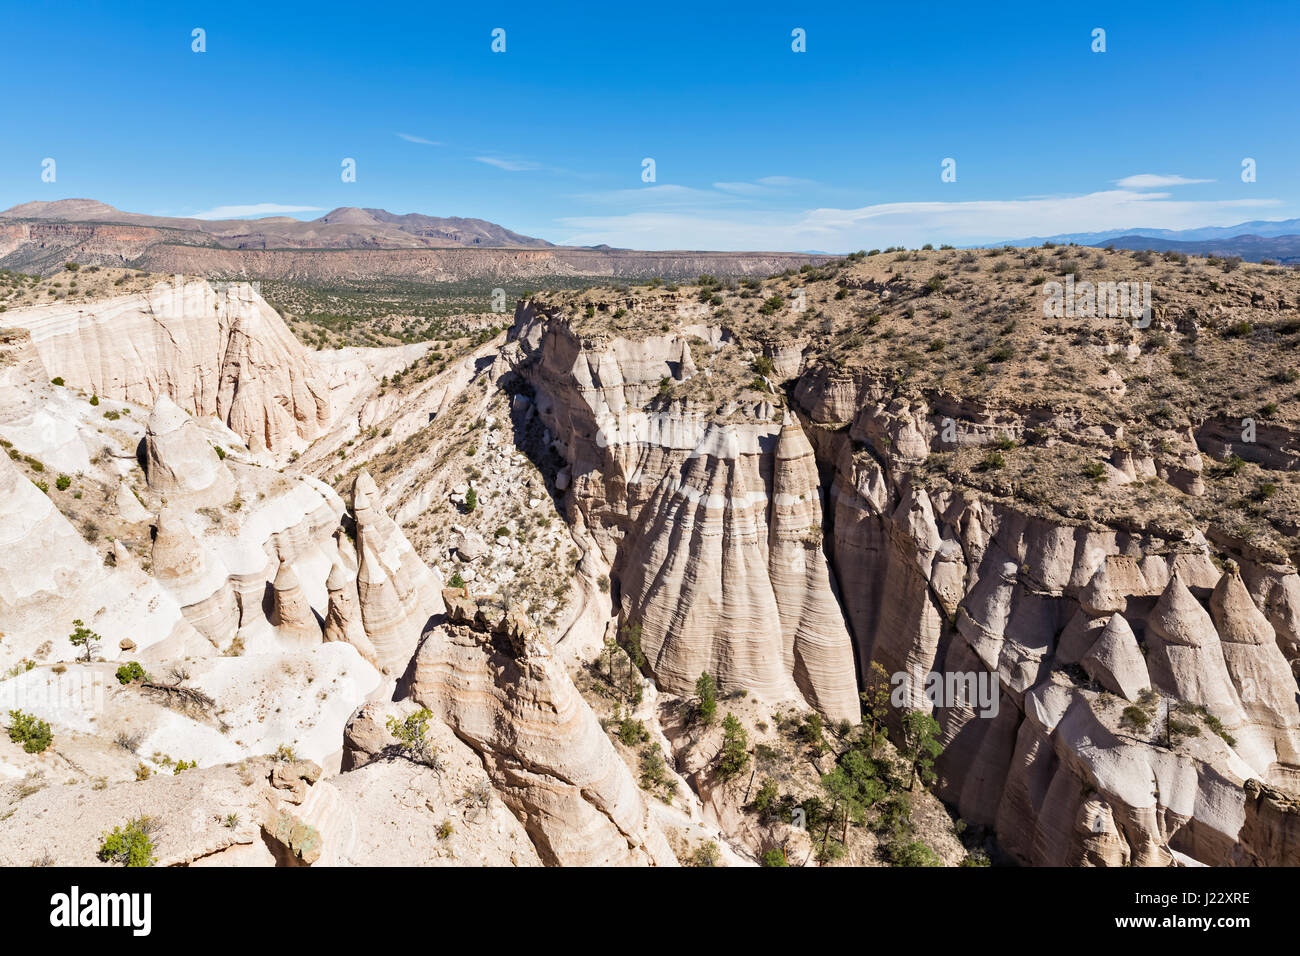 Stati Uniti d'America, Nuovo Messico, Pajarito Plateau, Sandoval County, Kasha-Katuwe tenda Rocks National Monument, vista della vallata desertica con bizzarre formazioni rocciose Foto Stock